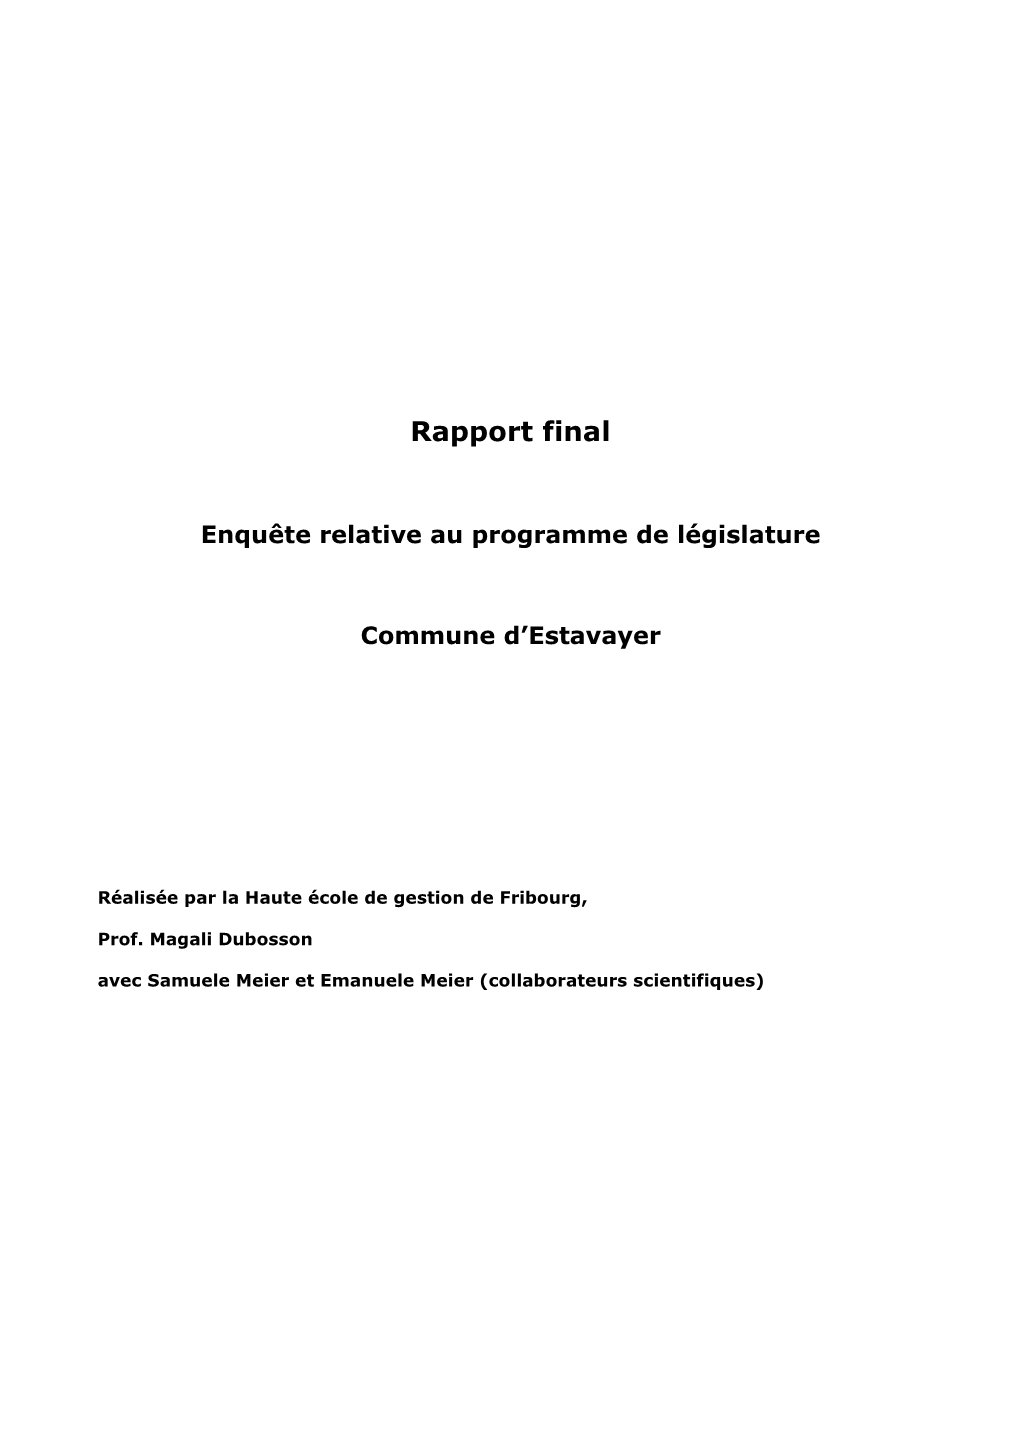 Rapport Final De L'enquête Relative Au Programme De Législature